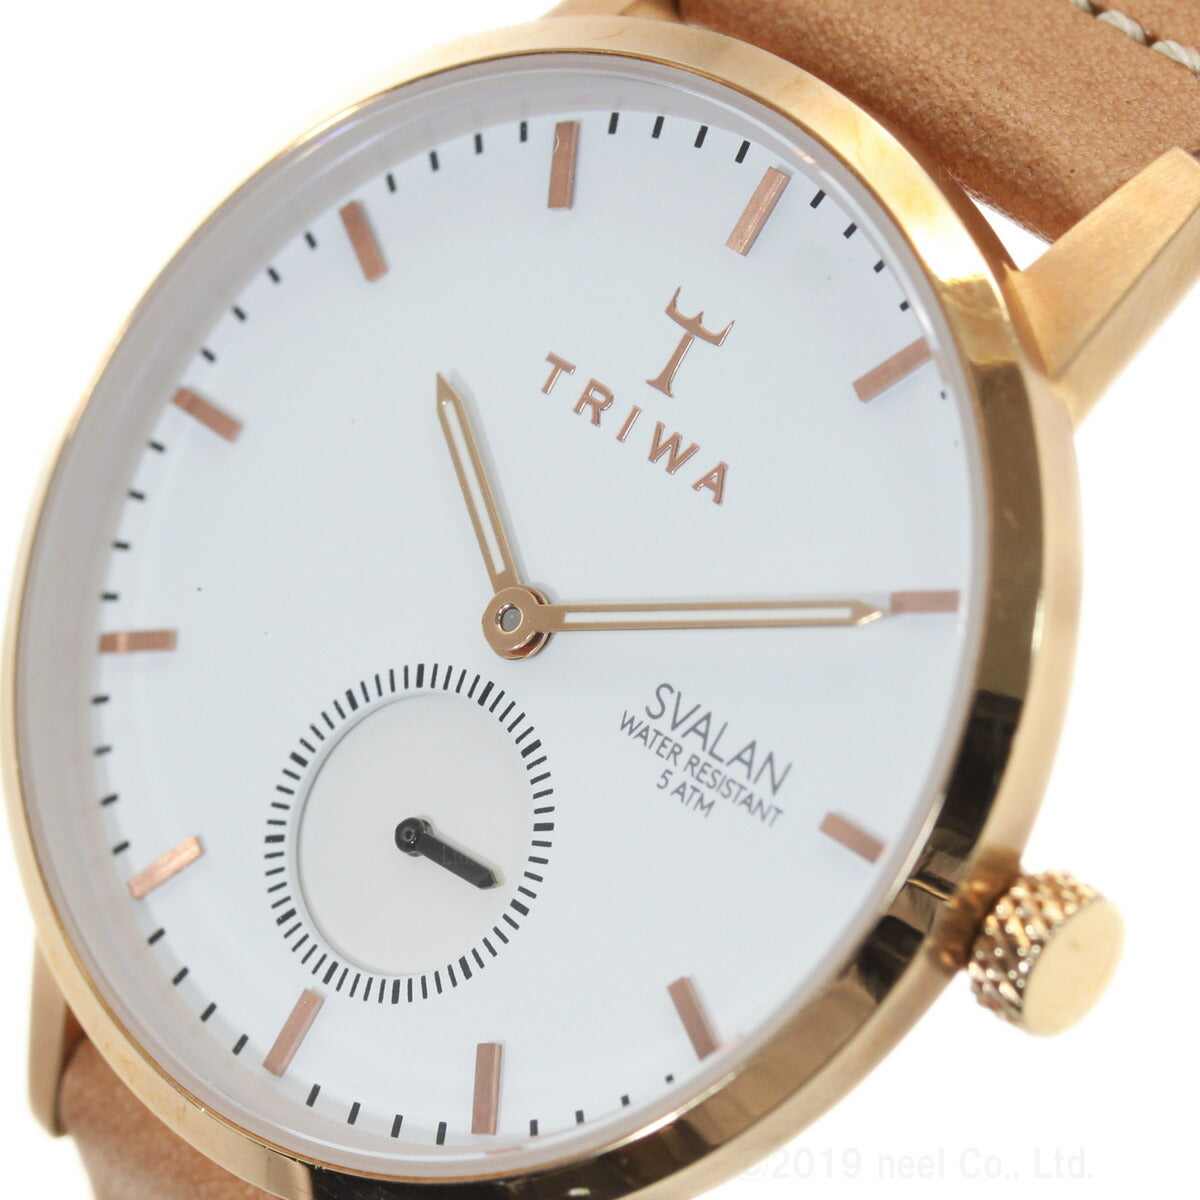 トリワ TRIWA 腕時計 レディース ローズ スバーラン ROSE SVALAN SVST104-SS010614